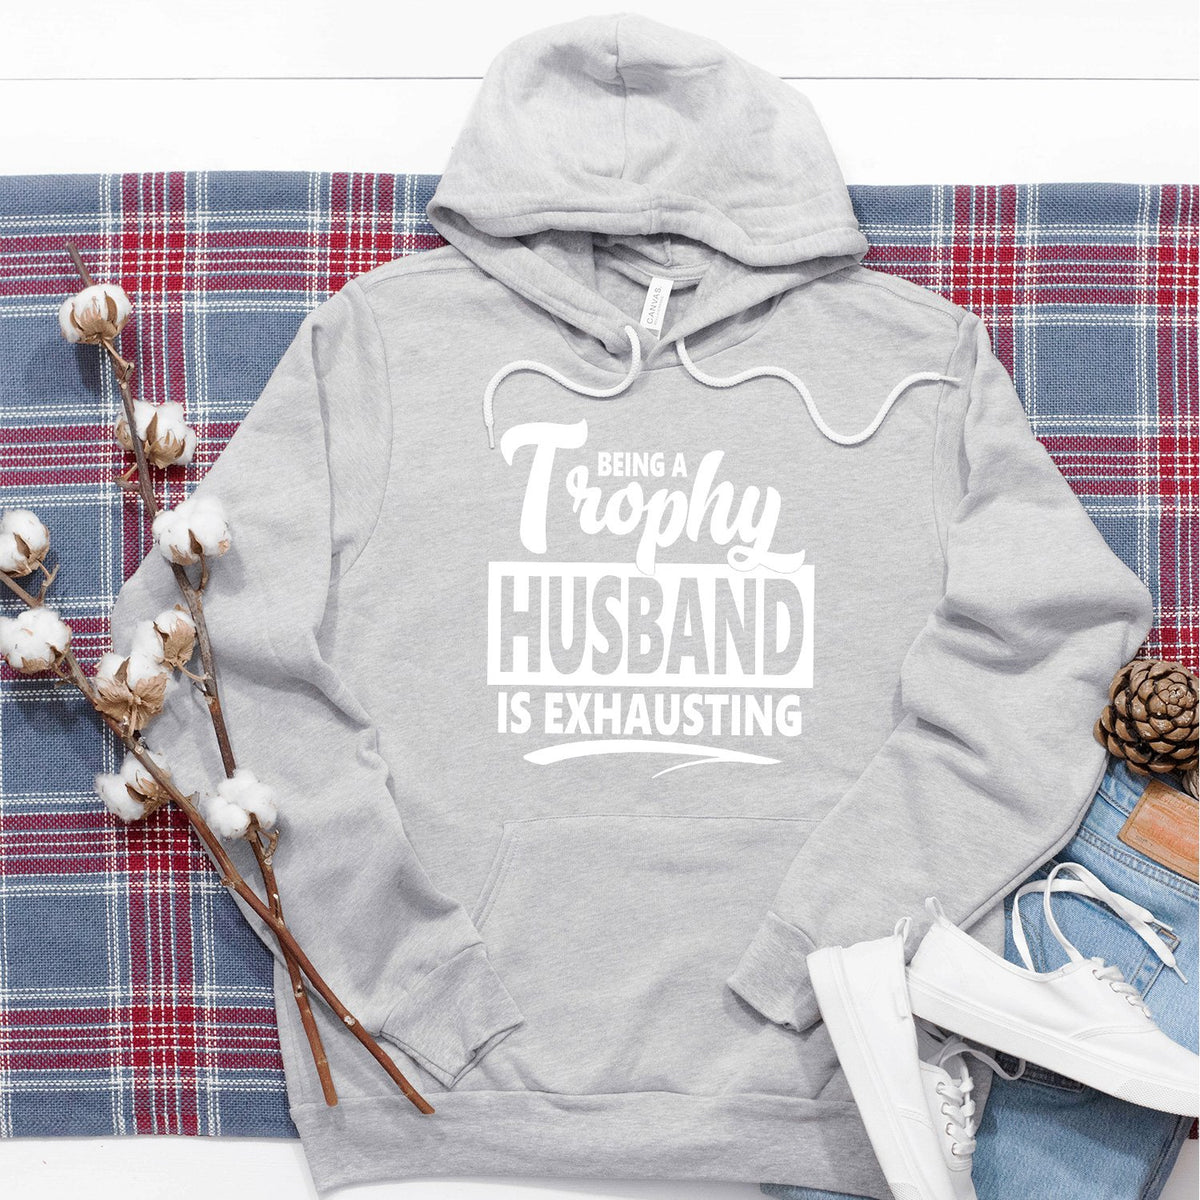 Being A Trophy Husband is Exhausting - Hoodie Sweatshirt